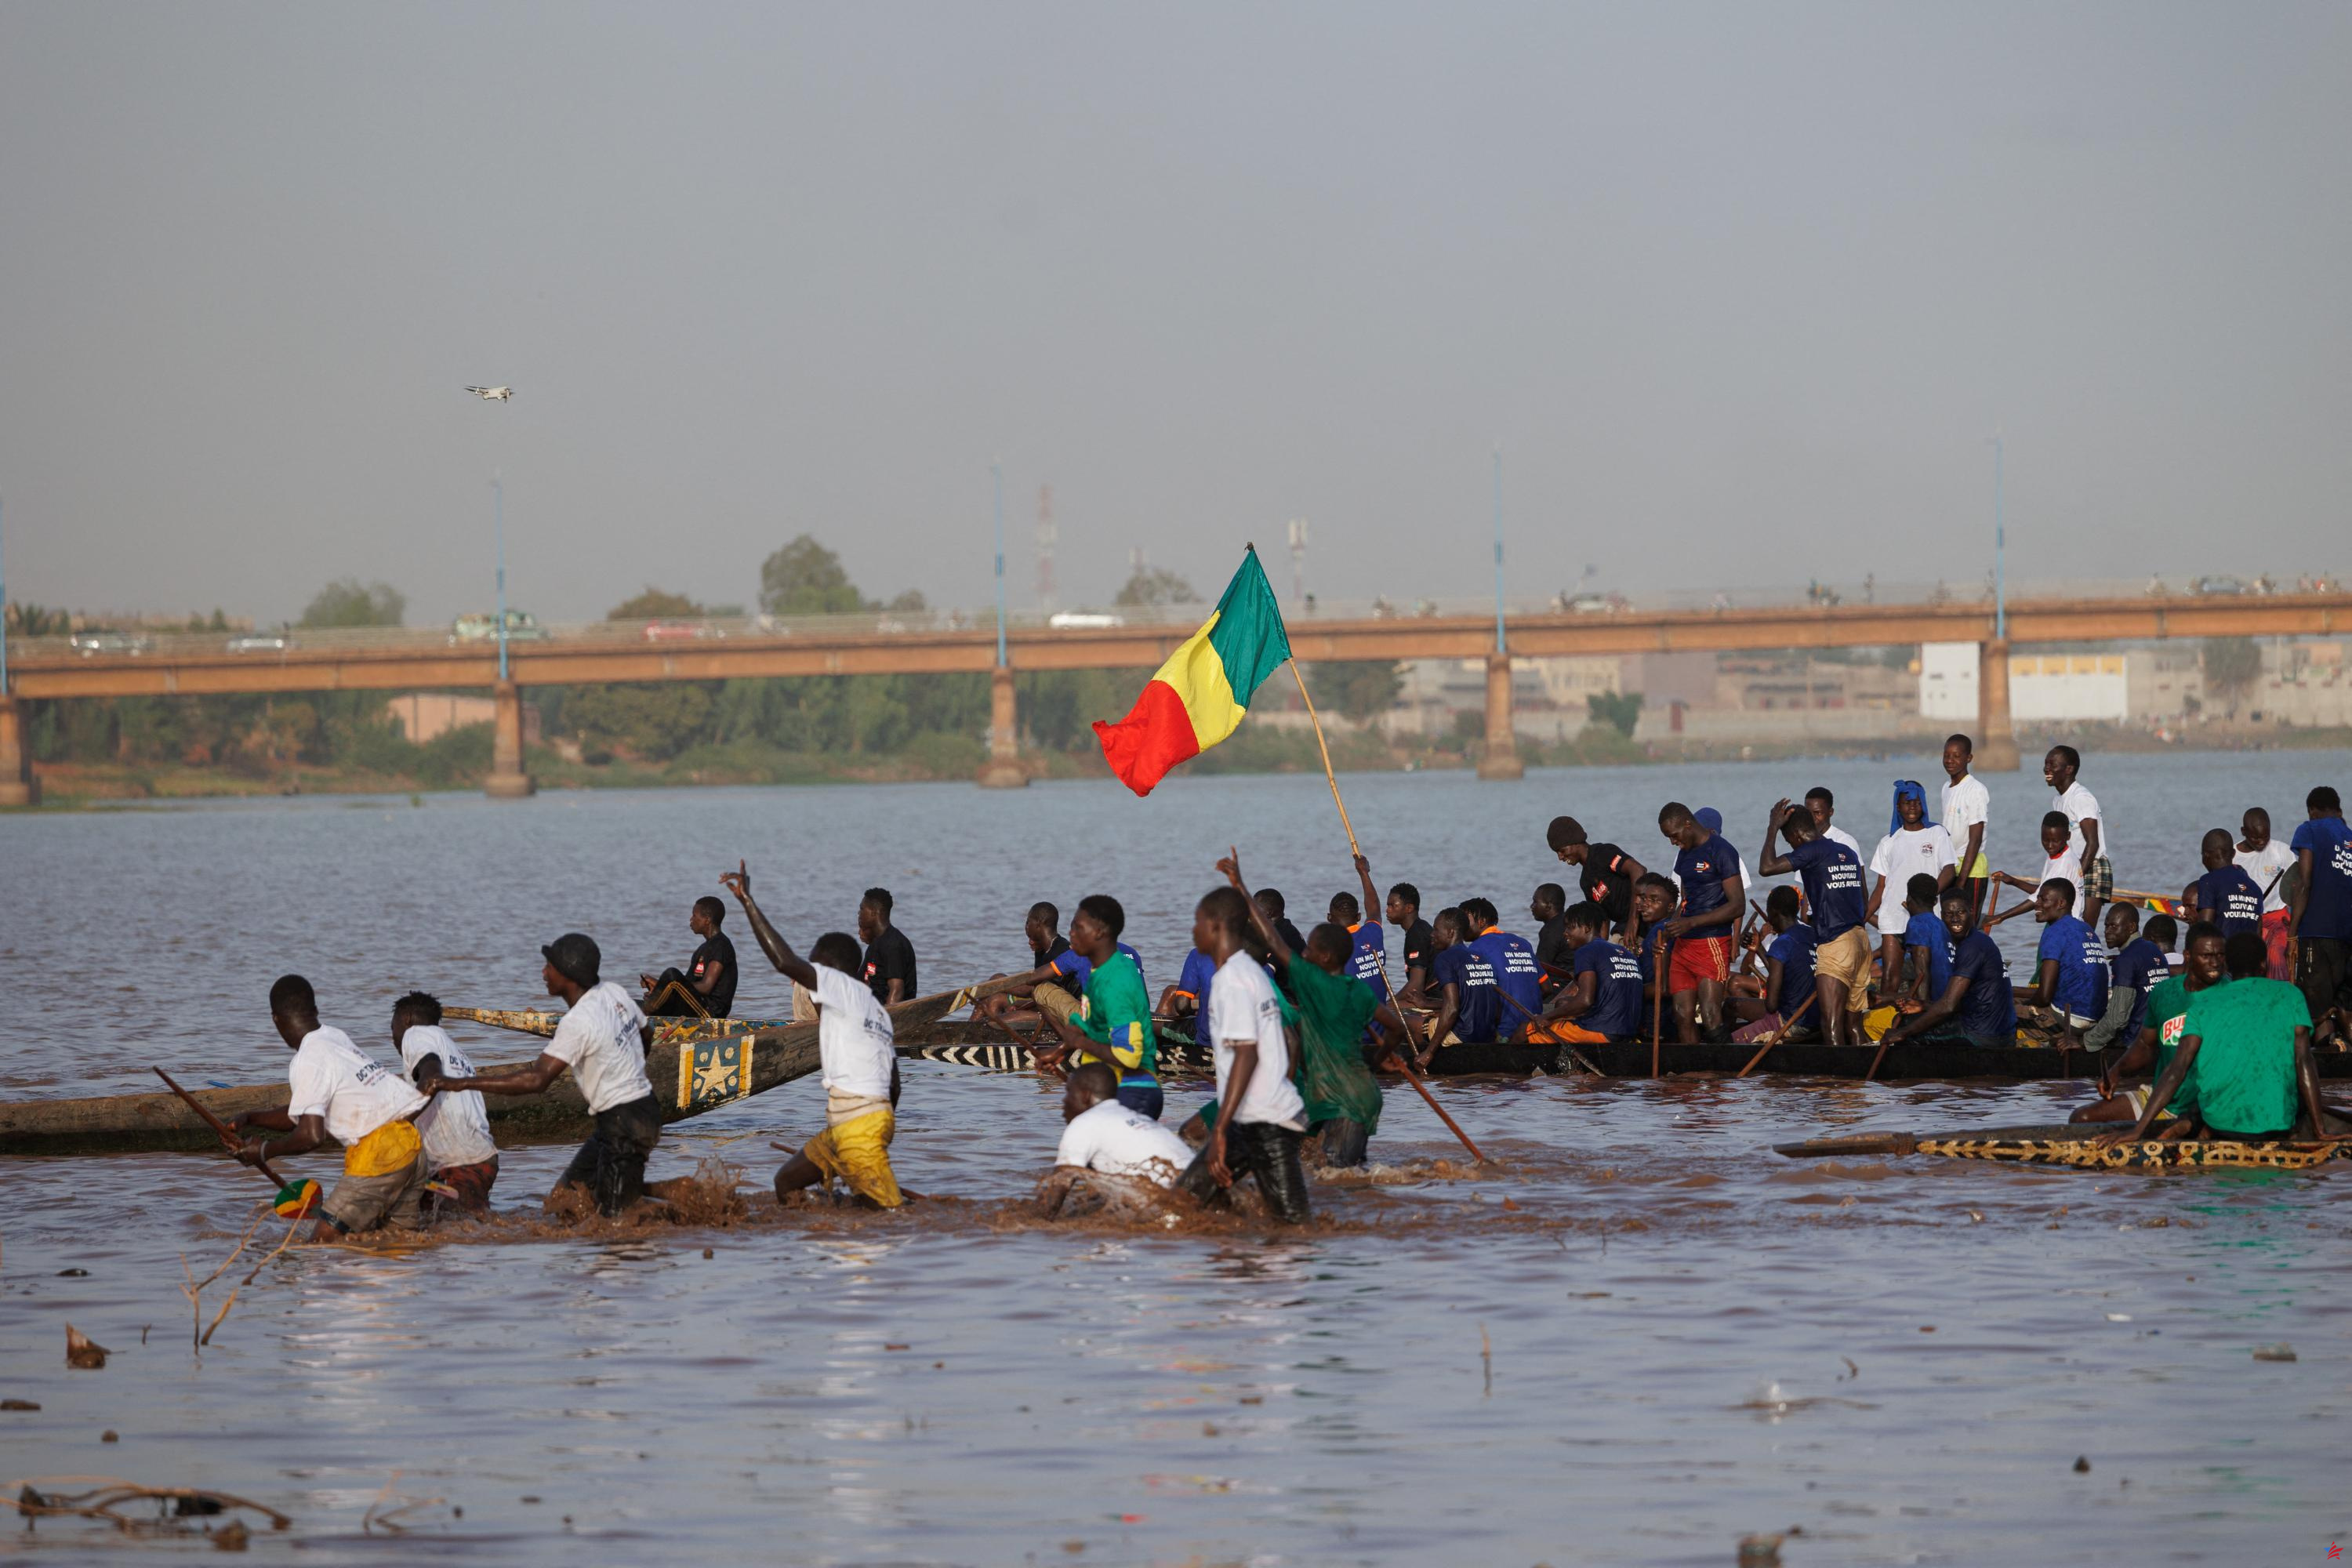 Malí: la junta suspende France 2 de los paquetes televisivos